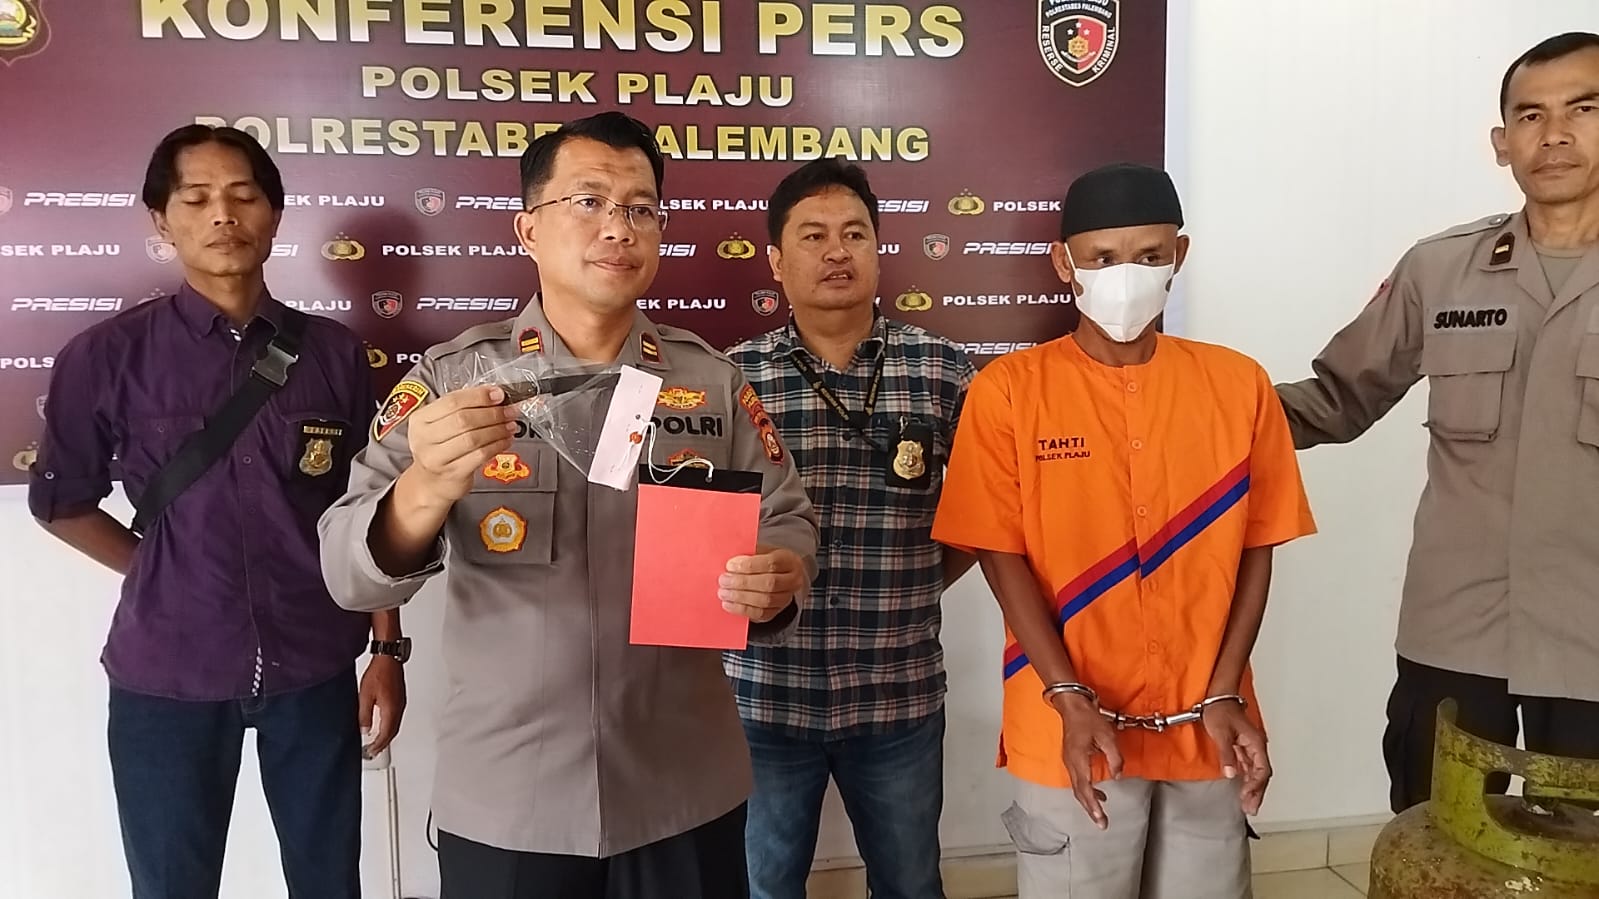 Unit Reskrim Polsek Plaju Palembang saat menggelar konferensi pers